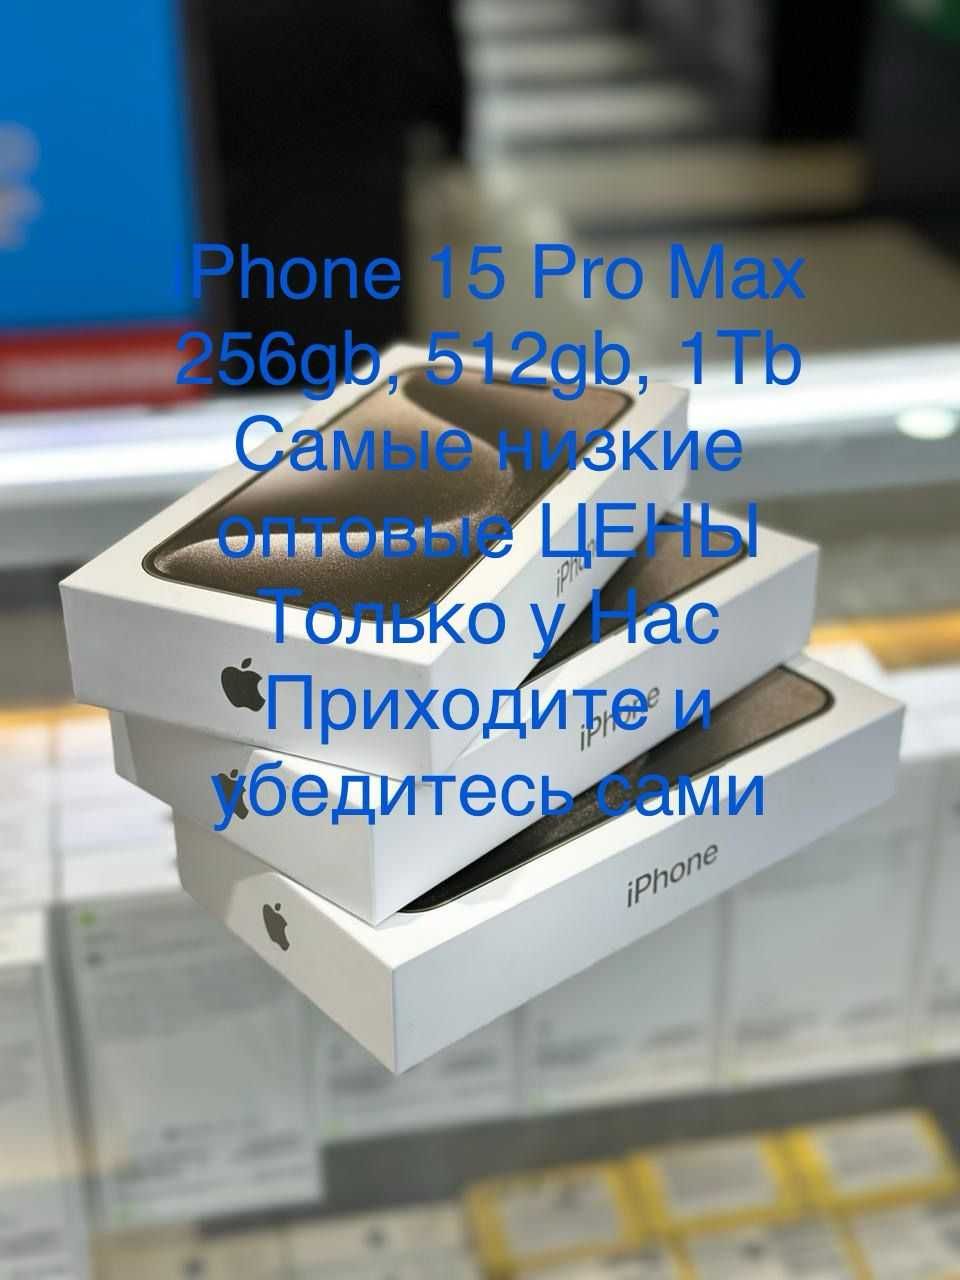 Apple iPhone 15 Pro Max 1Tb White Titanium самые низкие цены в алматы